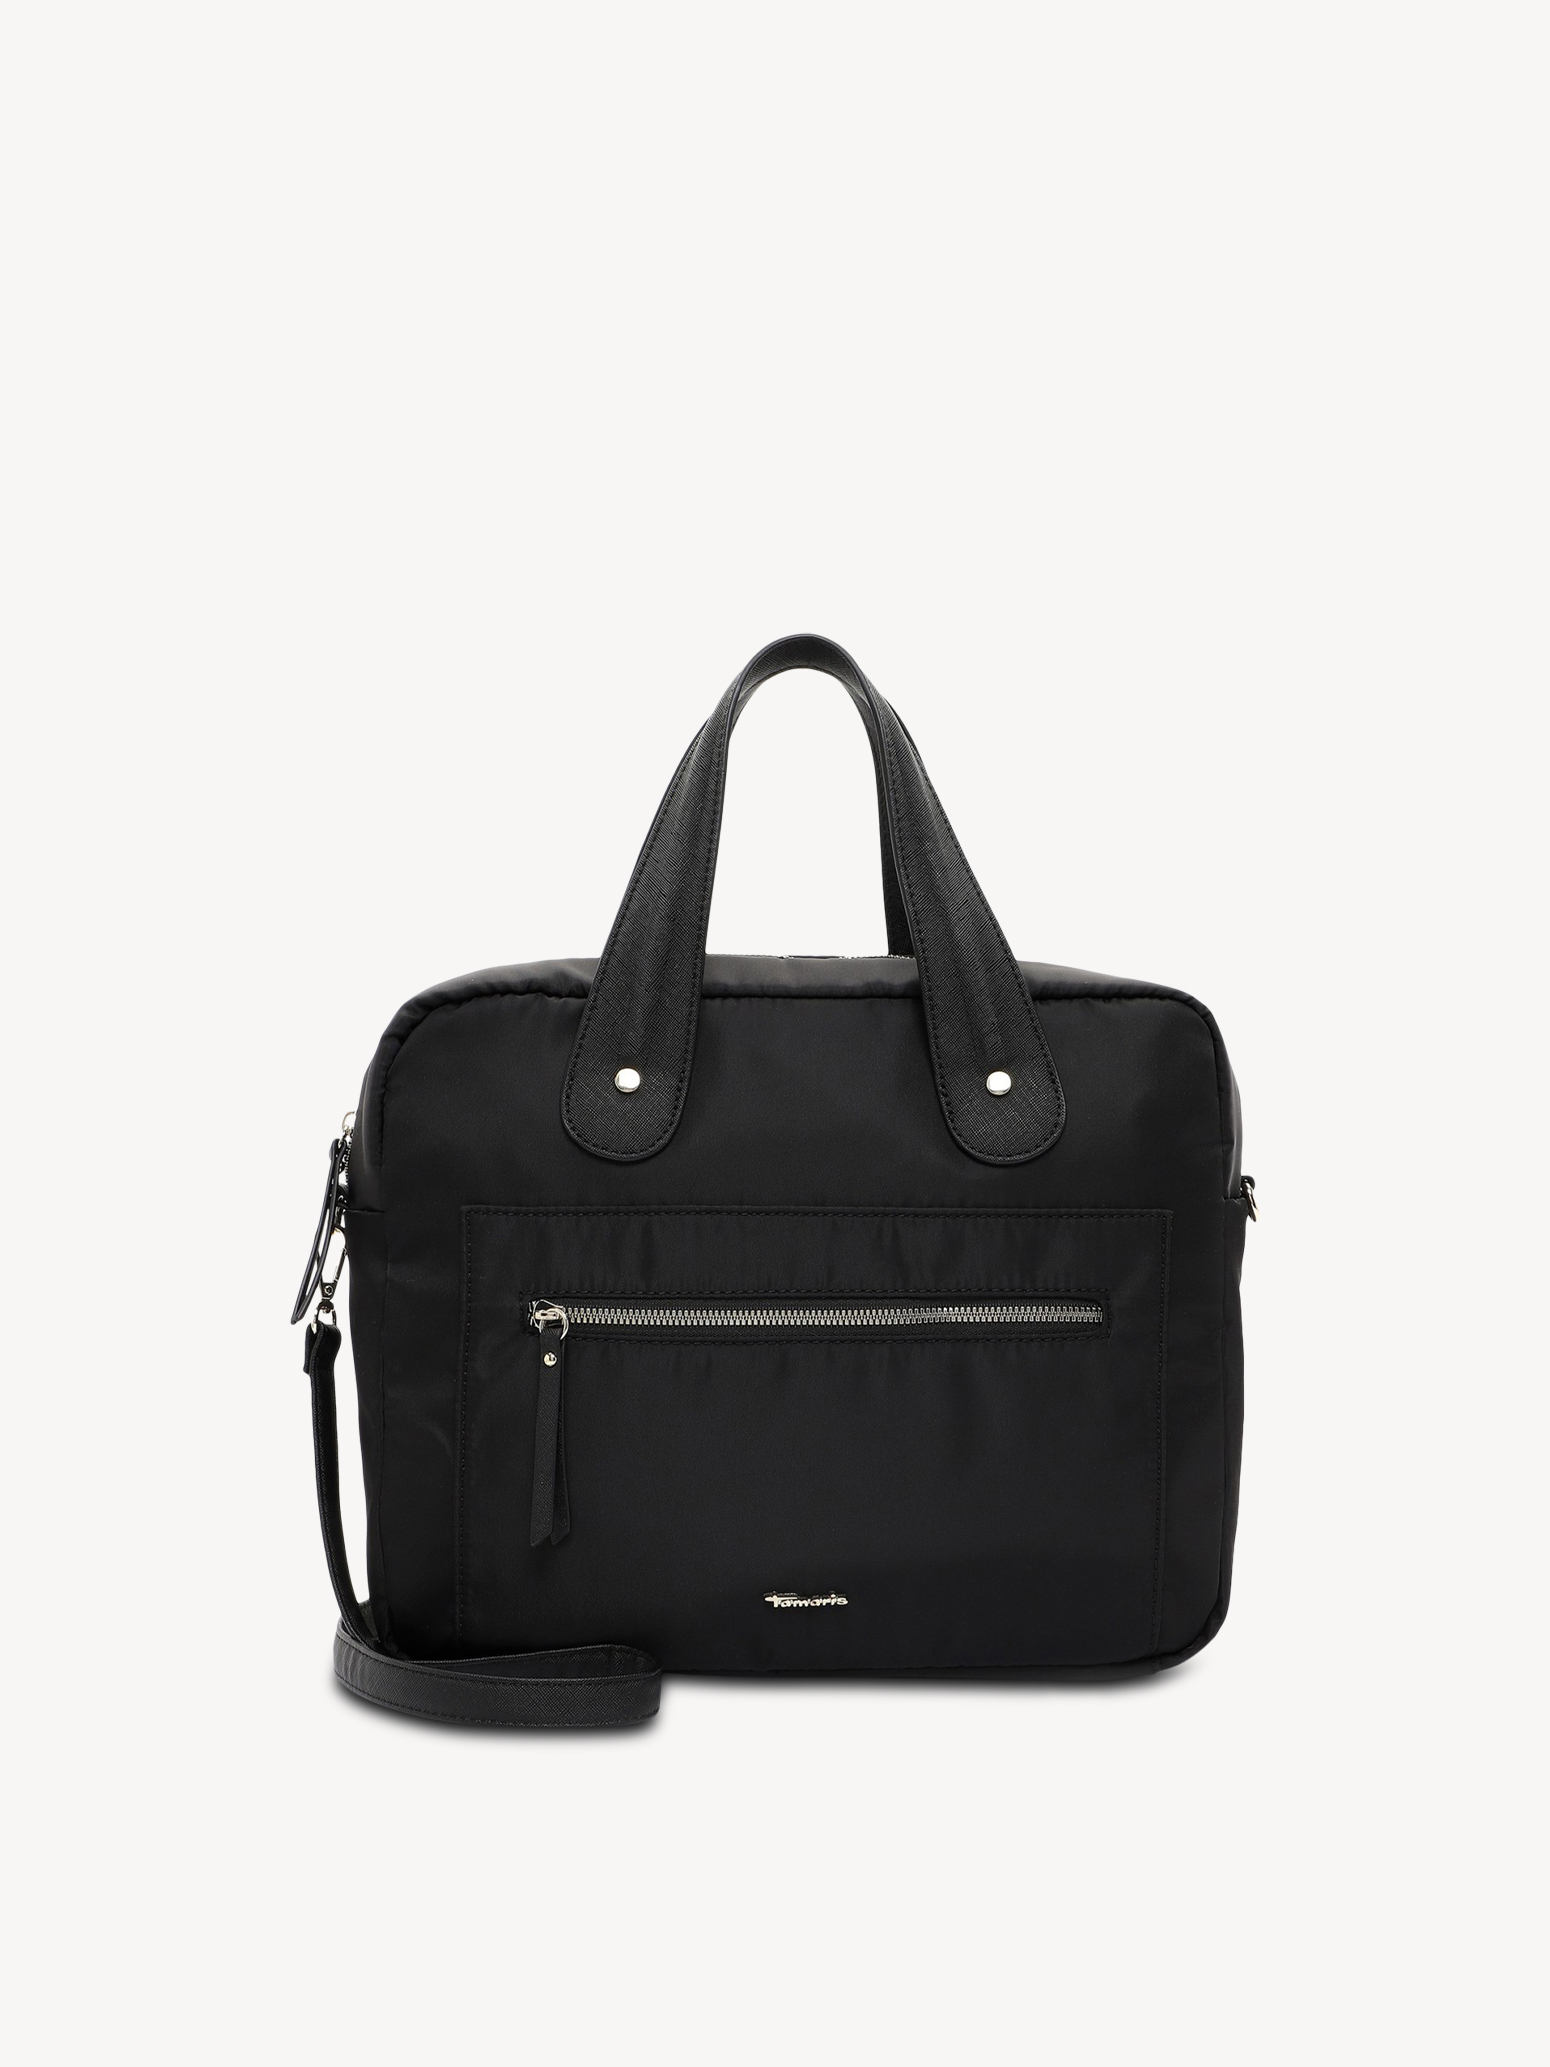 Business bag - black